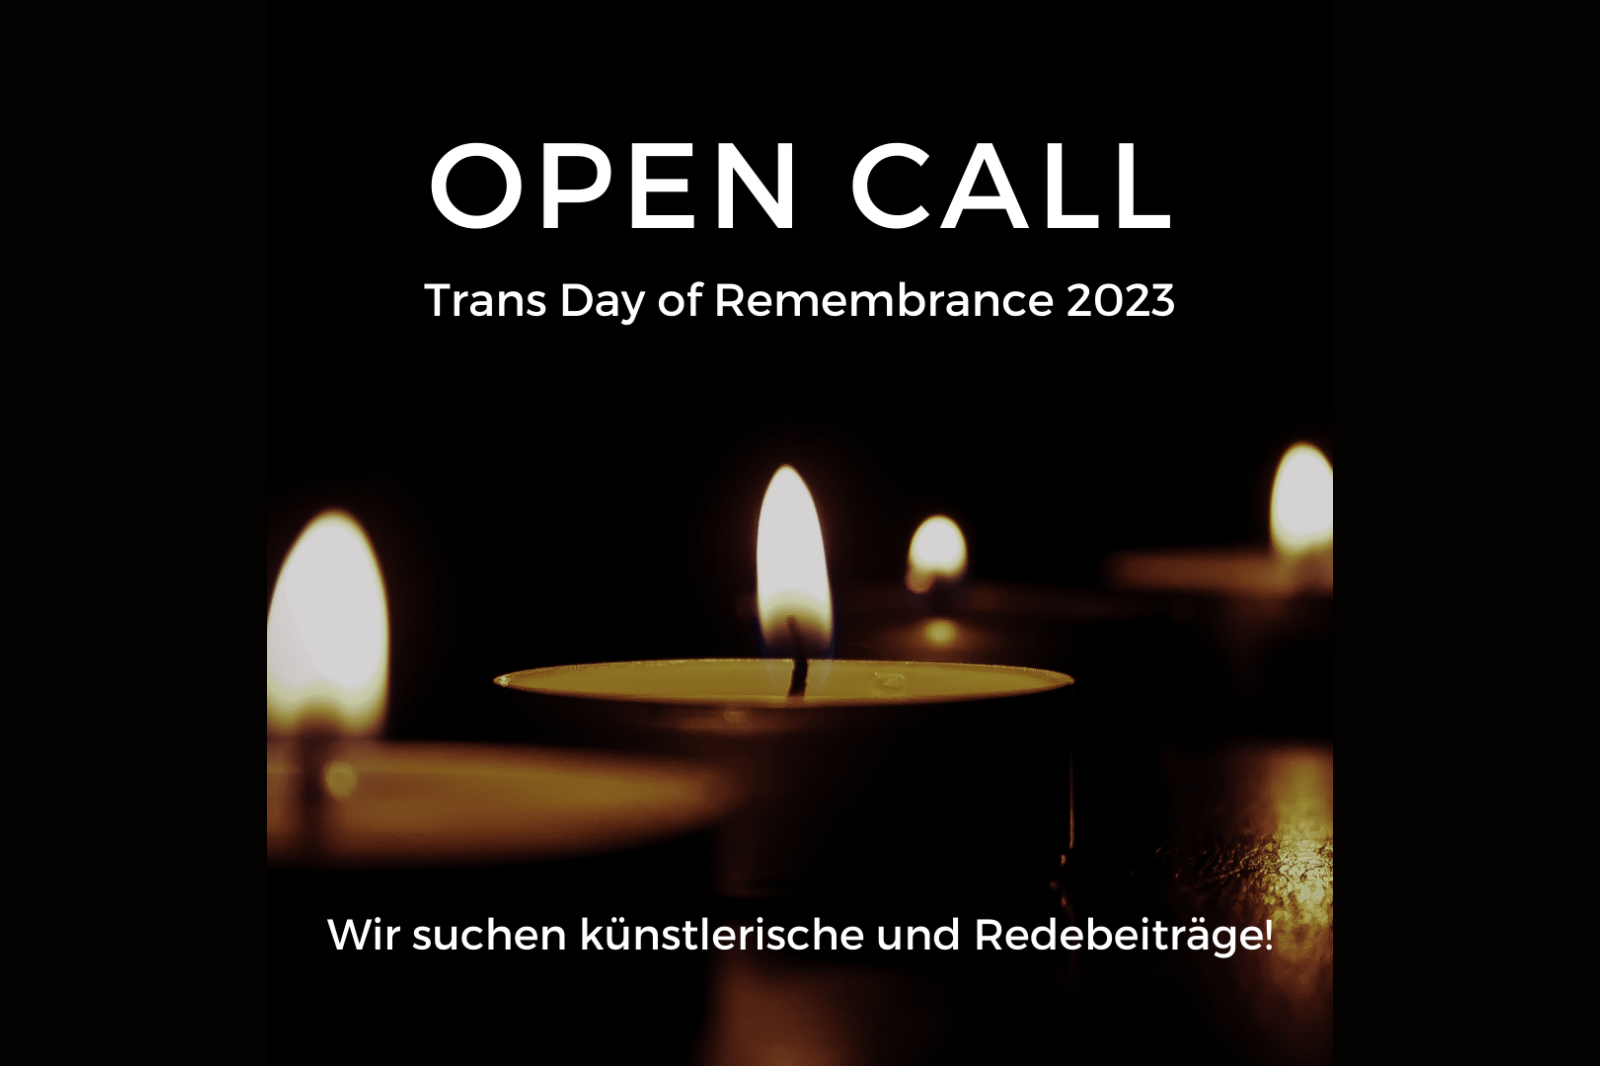 Auf einem schwarzen Hintergrund sind angezündete Teelichter zu sehen. Oben steht: "OPEN CALL, Trans Day of Remembrance 2023."